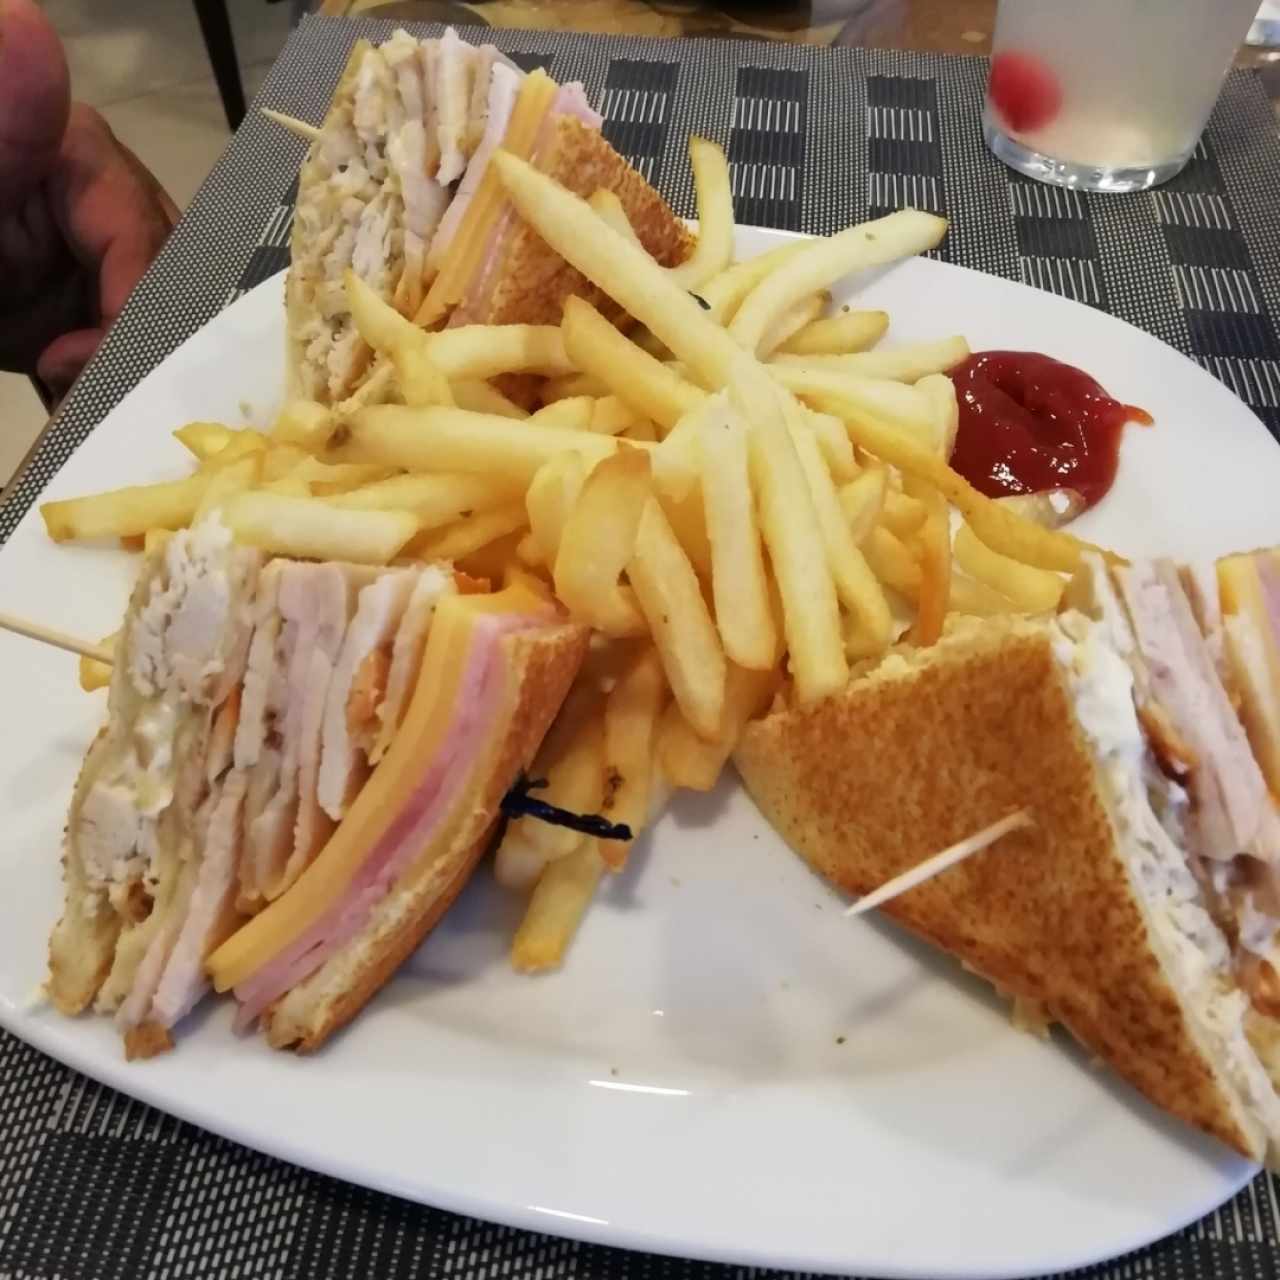 Club sandwich 